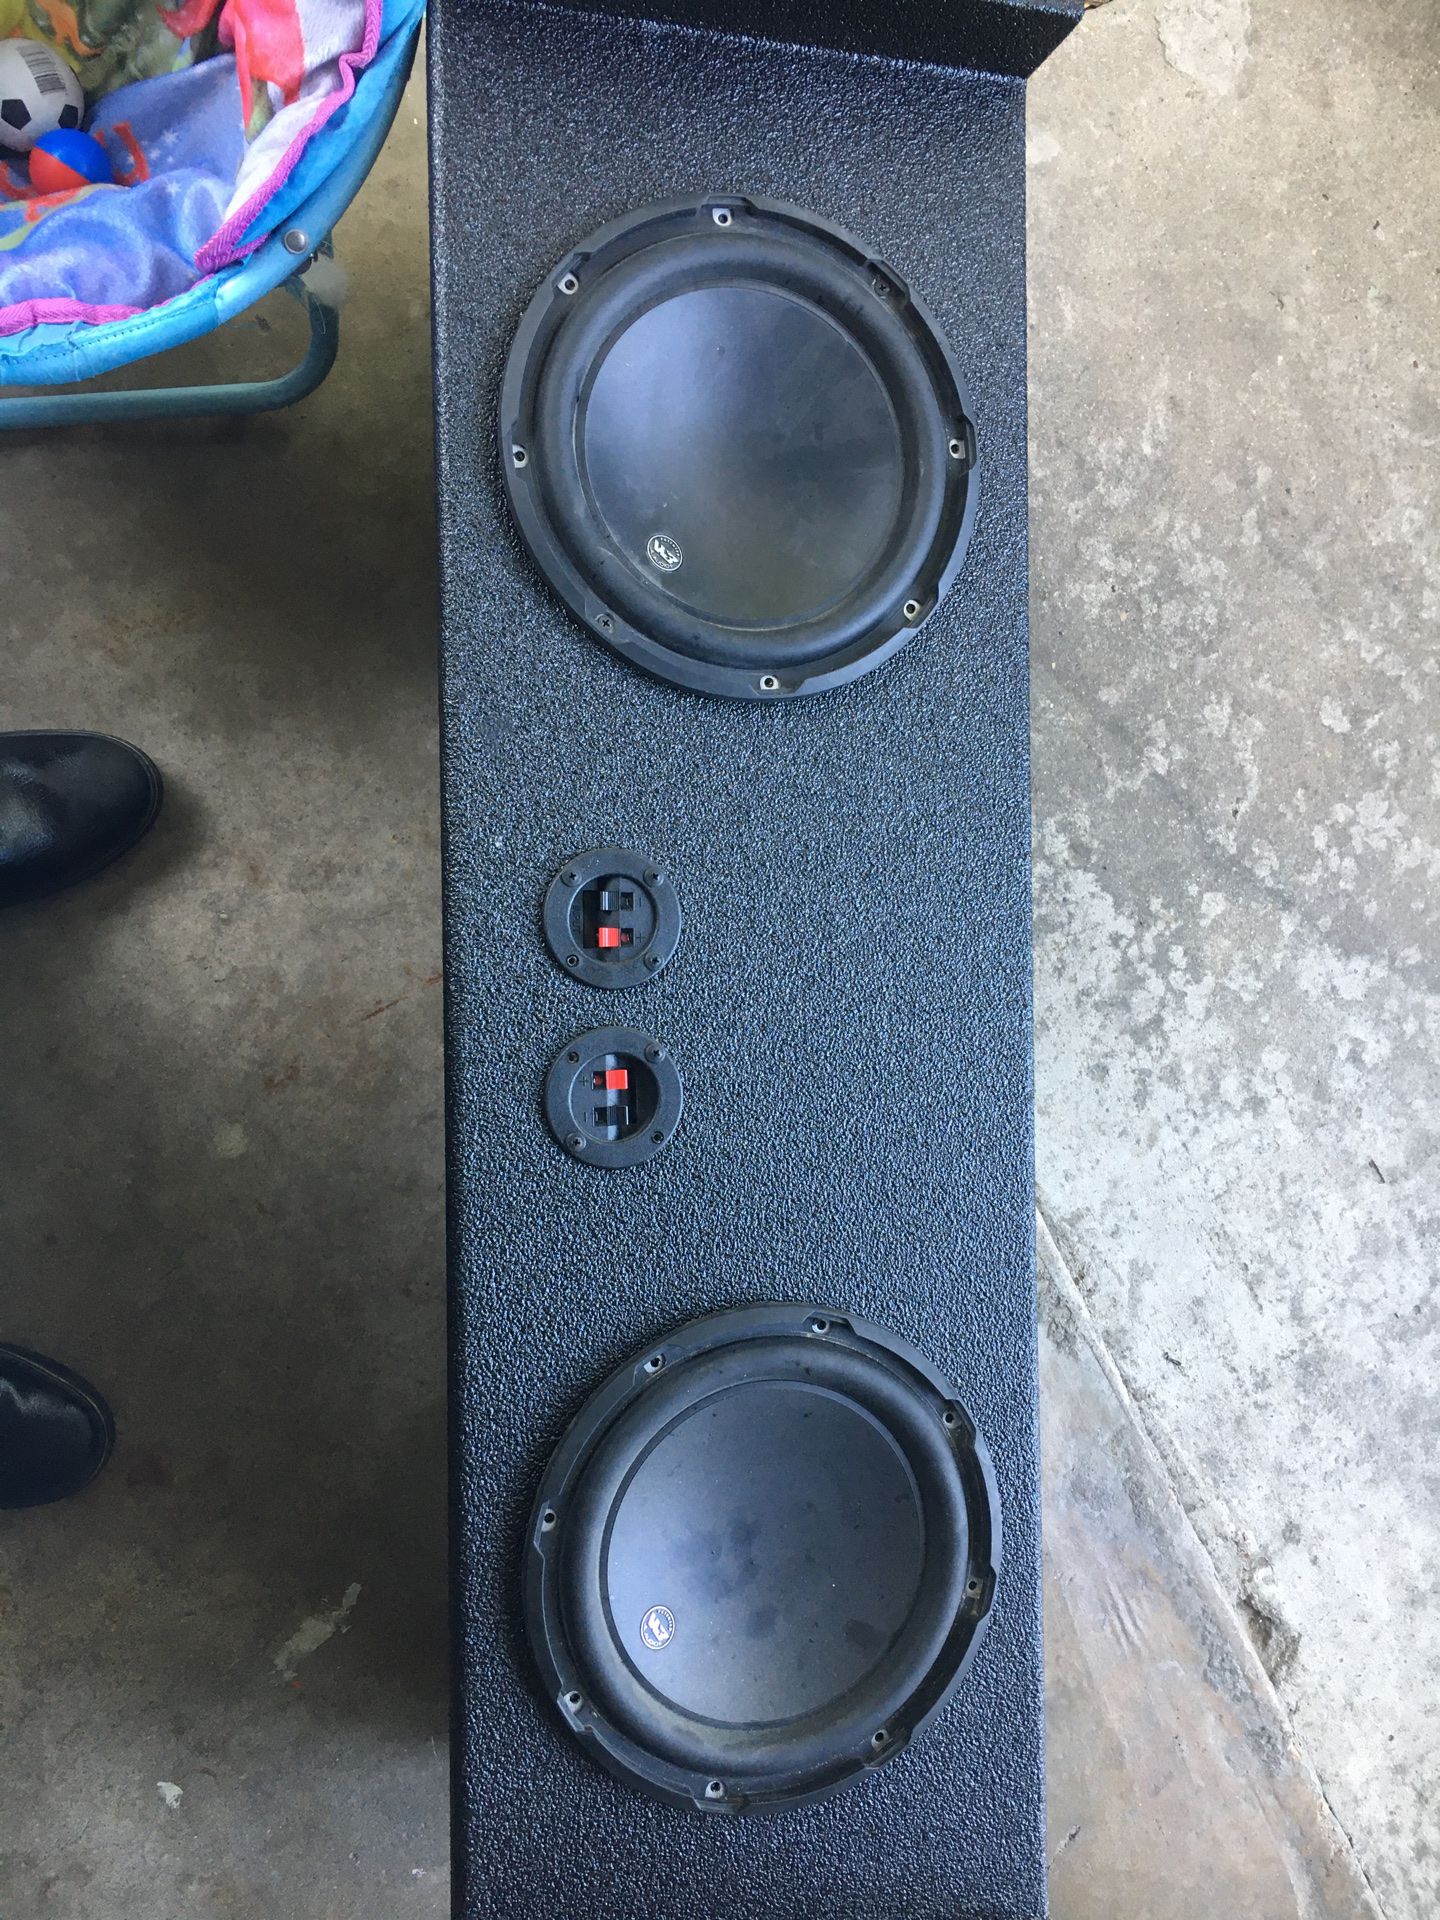 Jl audio w3 speakers